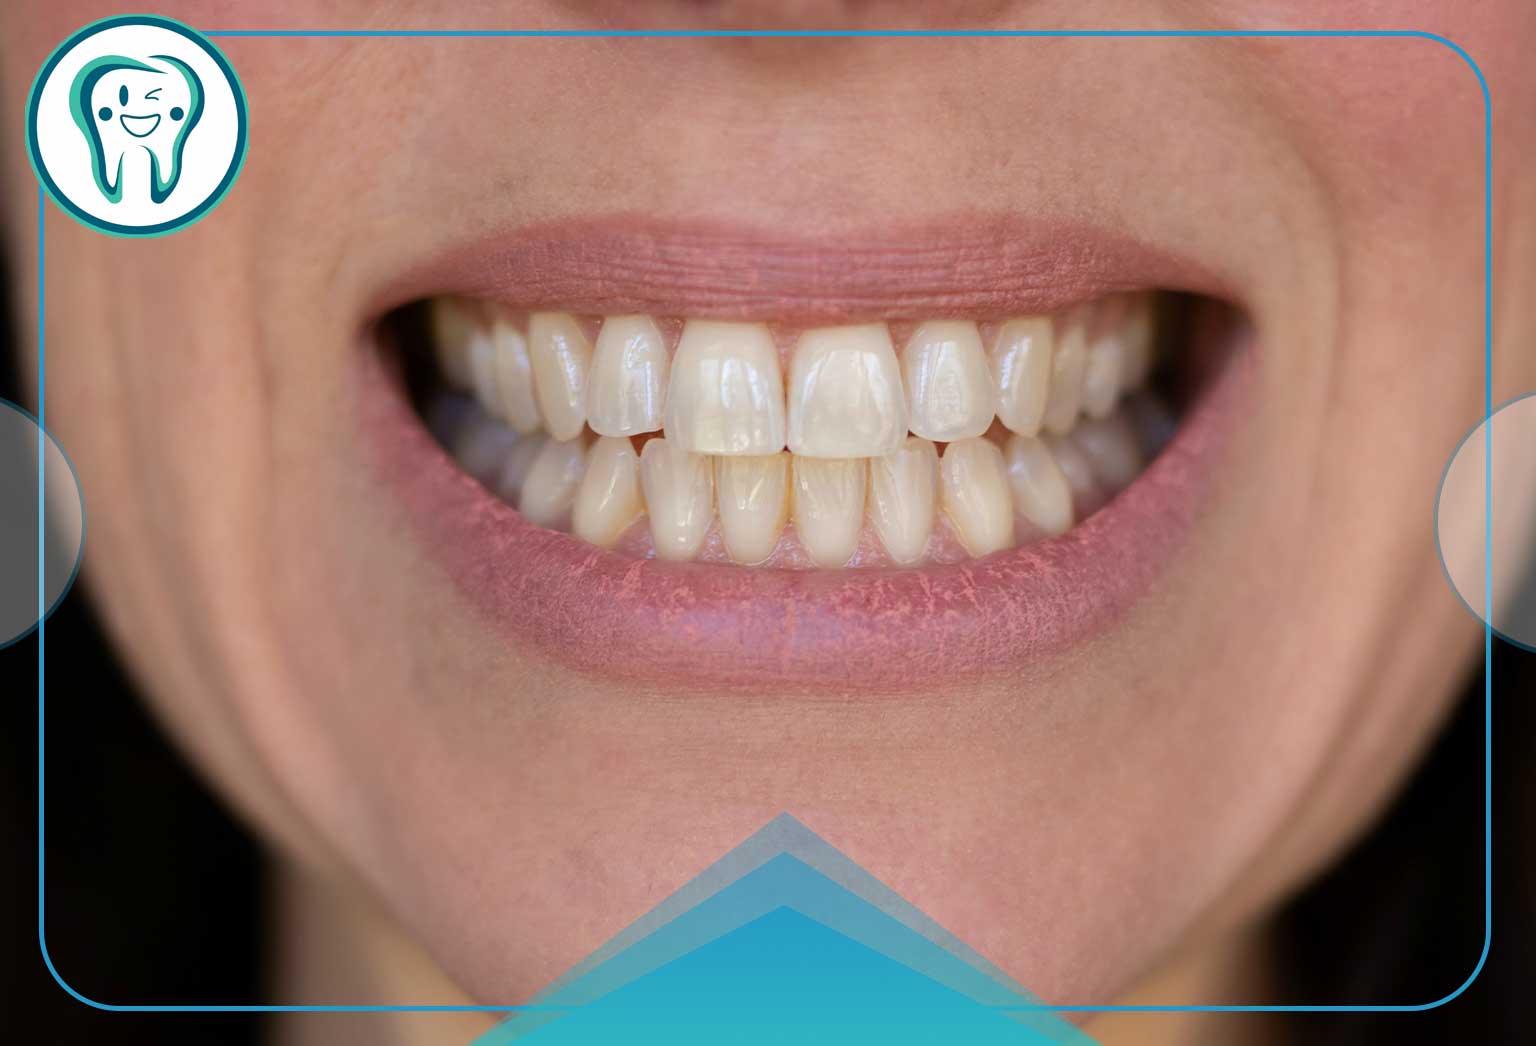 عوارض بلیچینگ دندان چیست؟